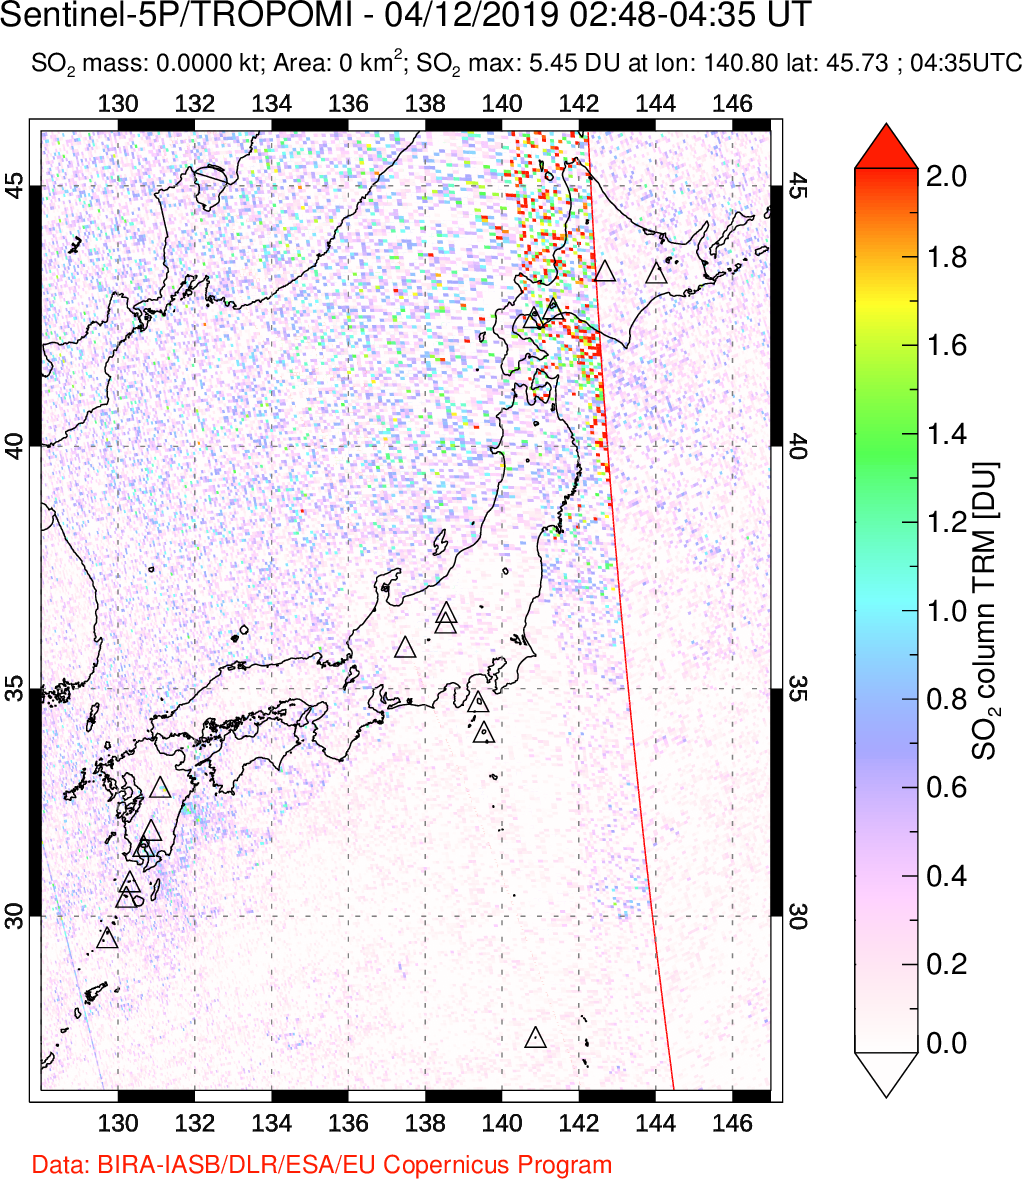 A sulfur dioxide image over Japan on Apr 12, 2019.